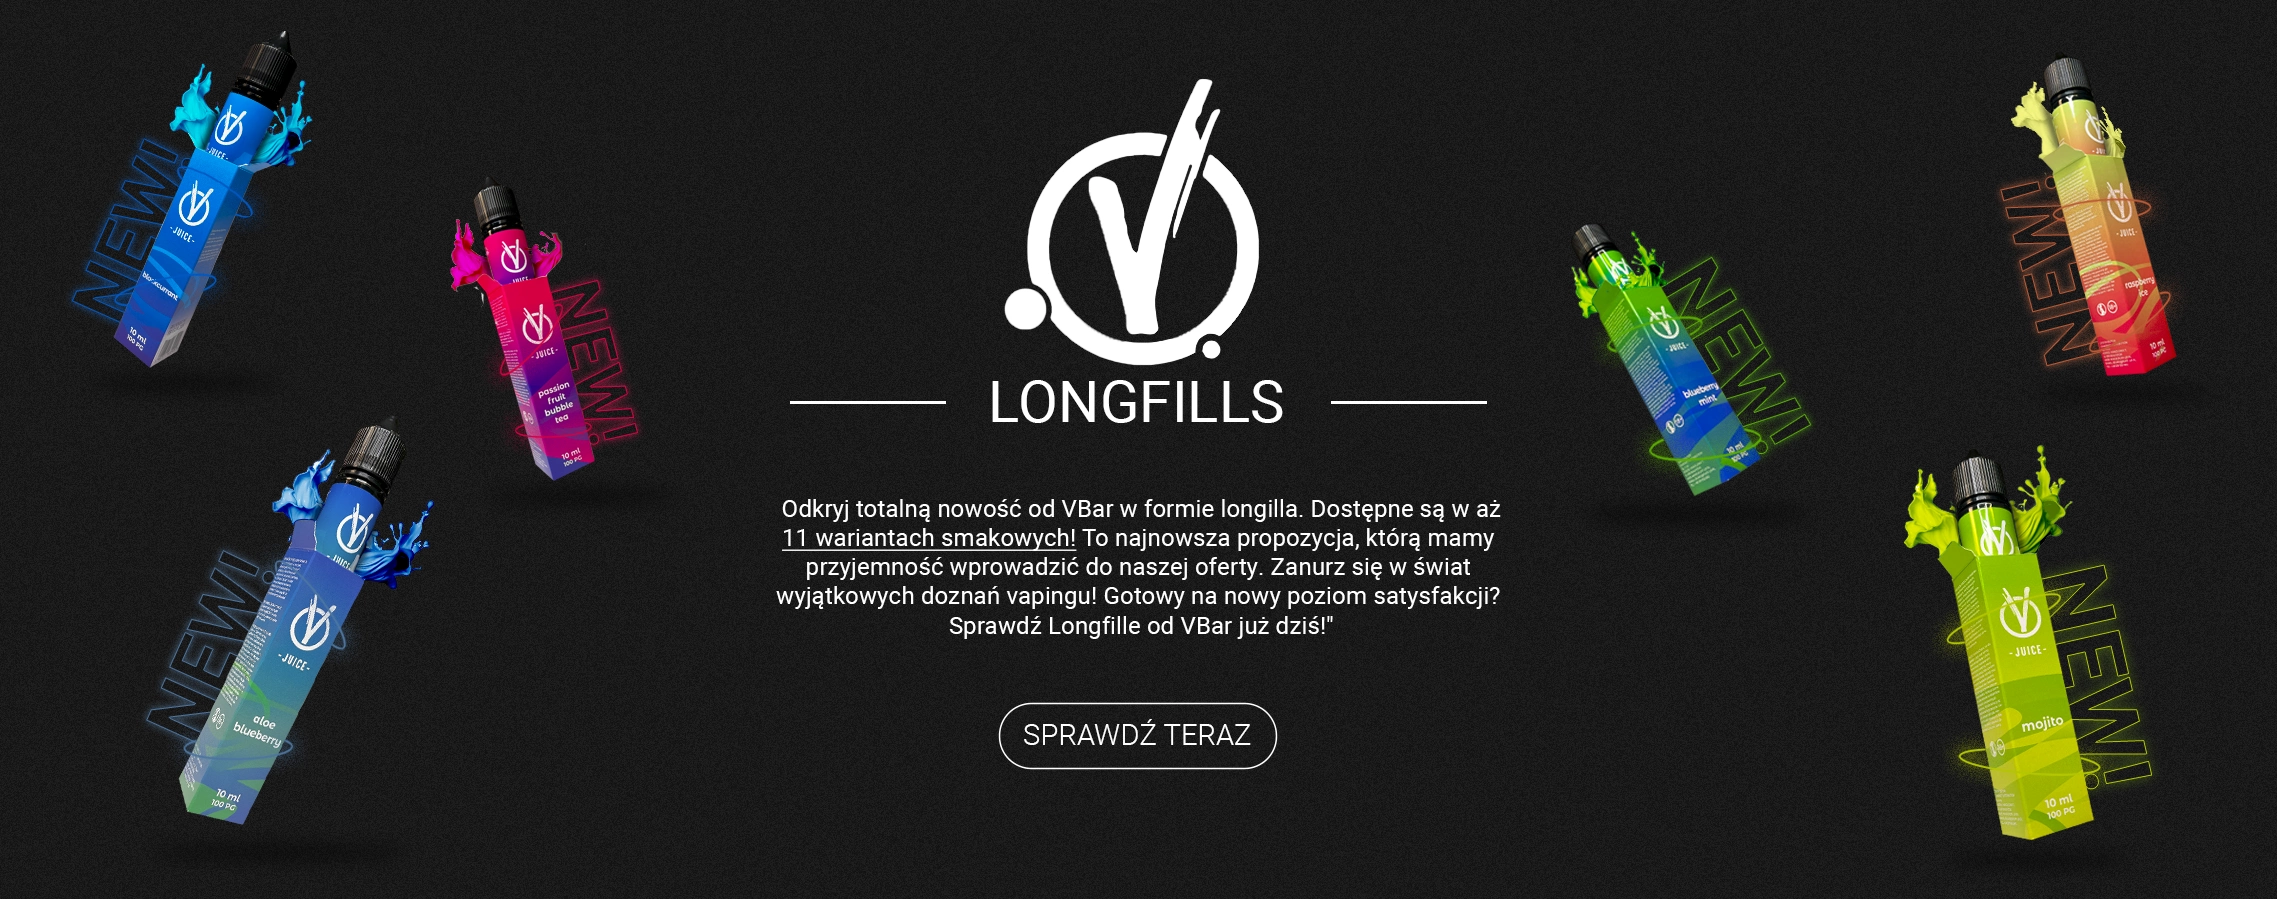 Vbar-Longfills(1)